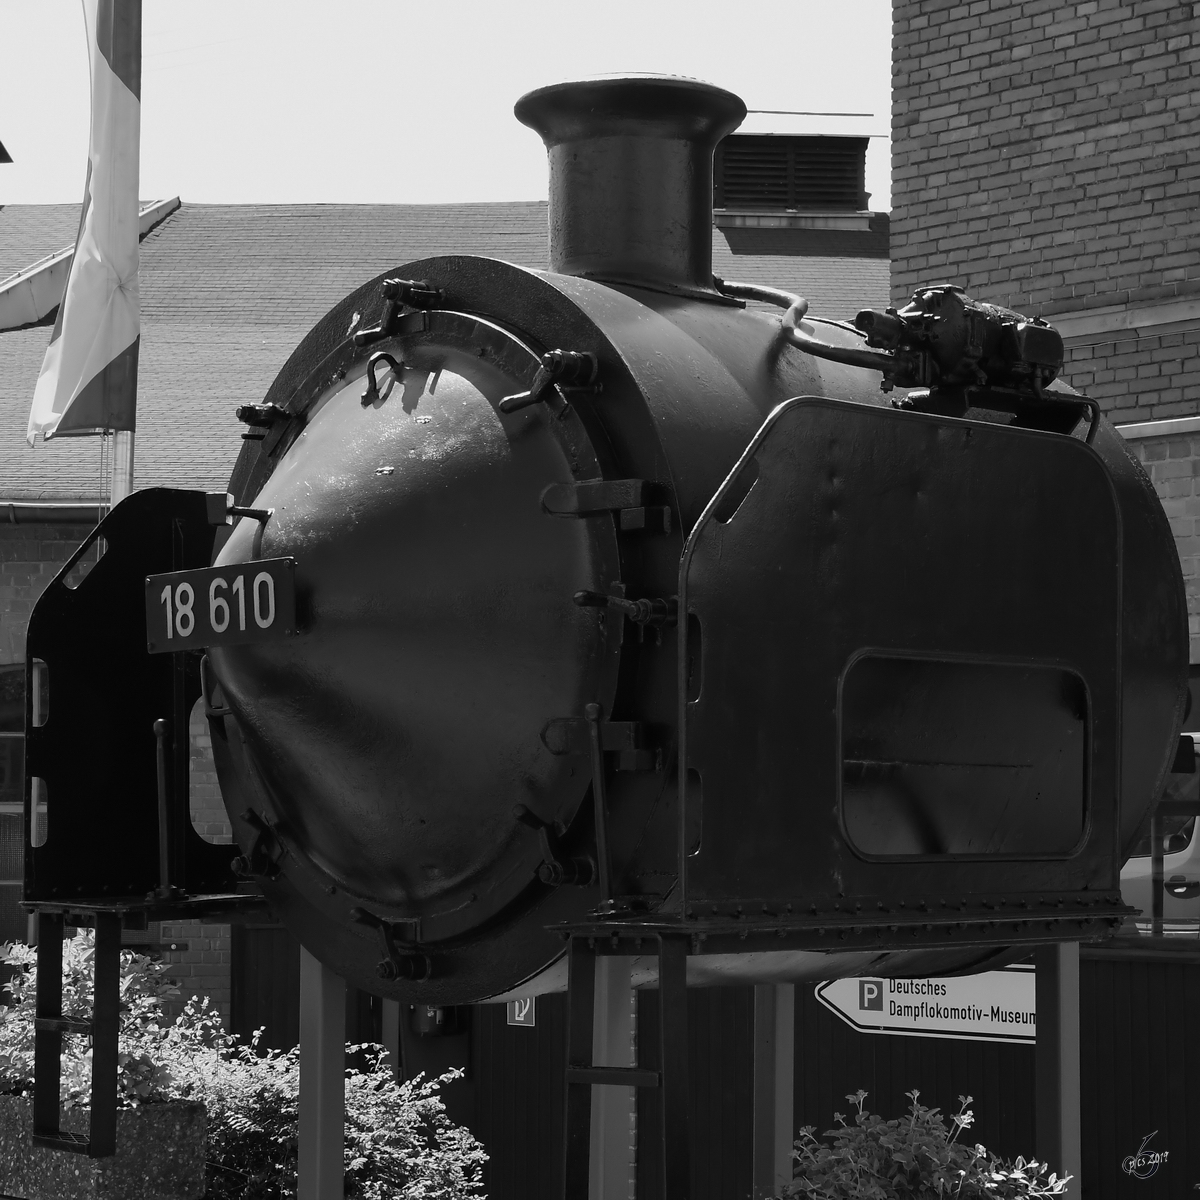 Die Rauchkammer der 18 610 wird im Eingangsbereich des Deutschen Dampflokomotiv-Museums Neuenmarkt-Wirsberg präsentiert. (Juni 2019)